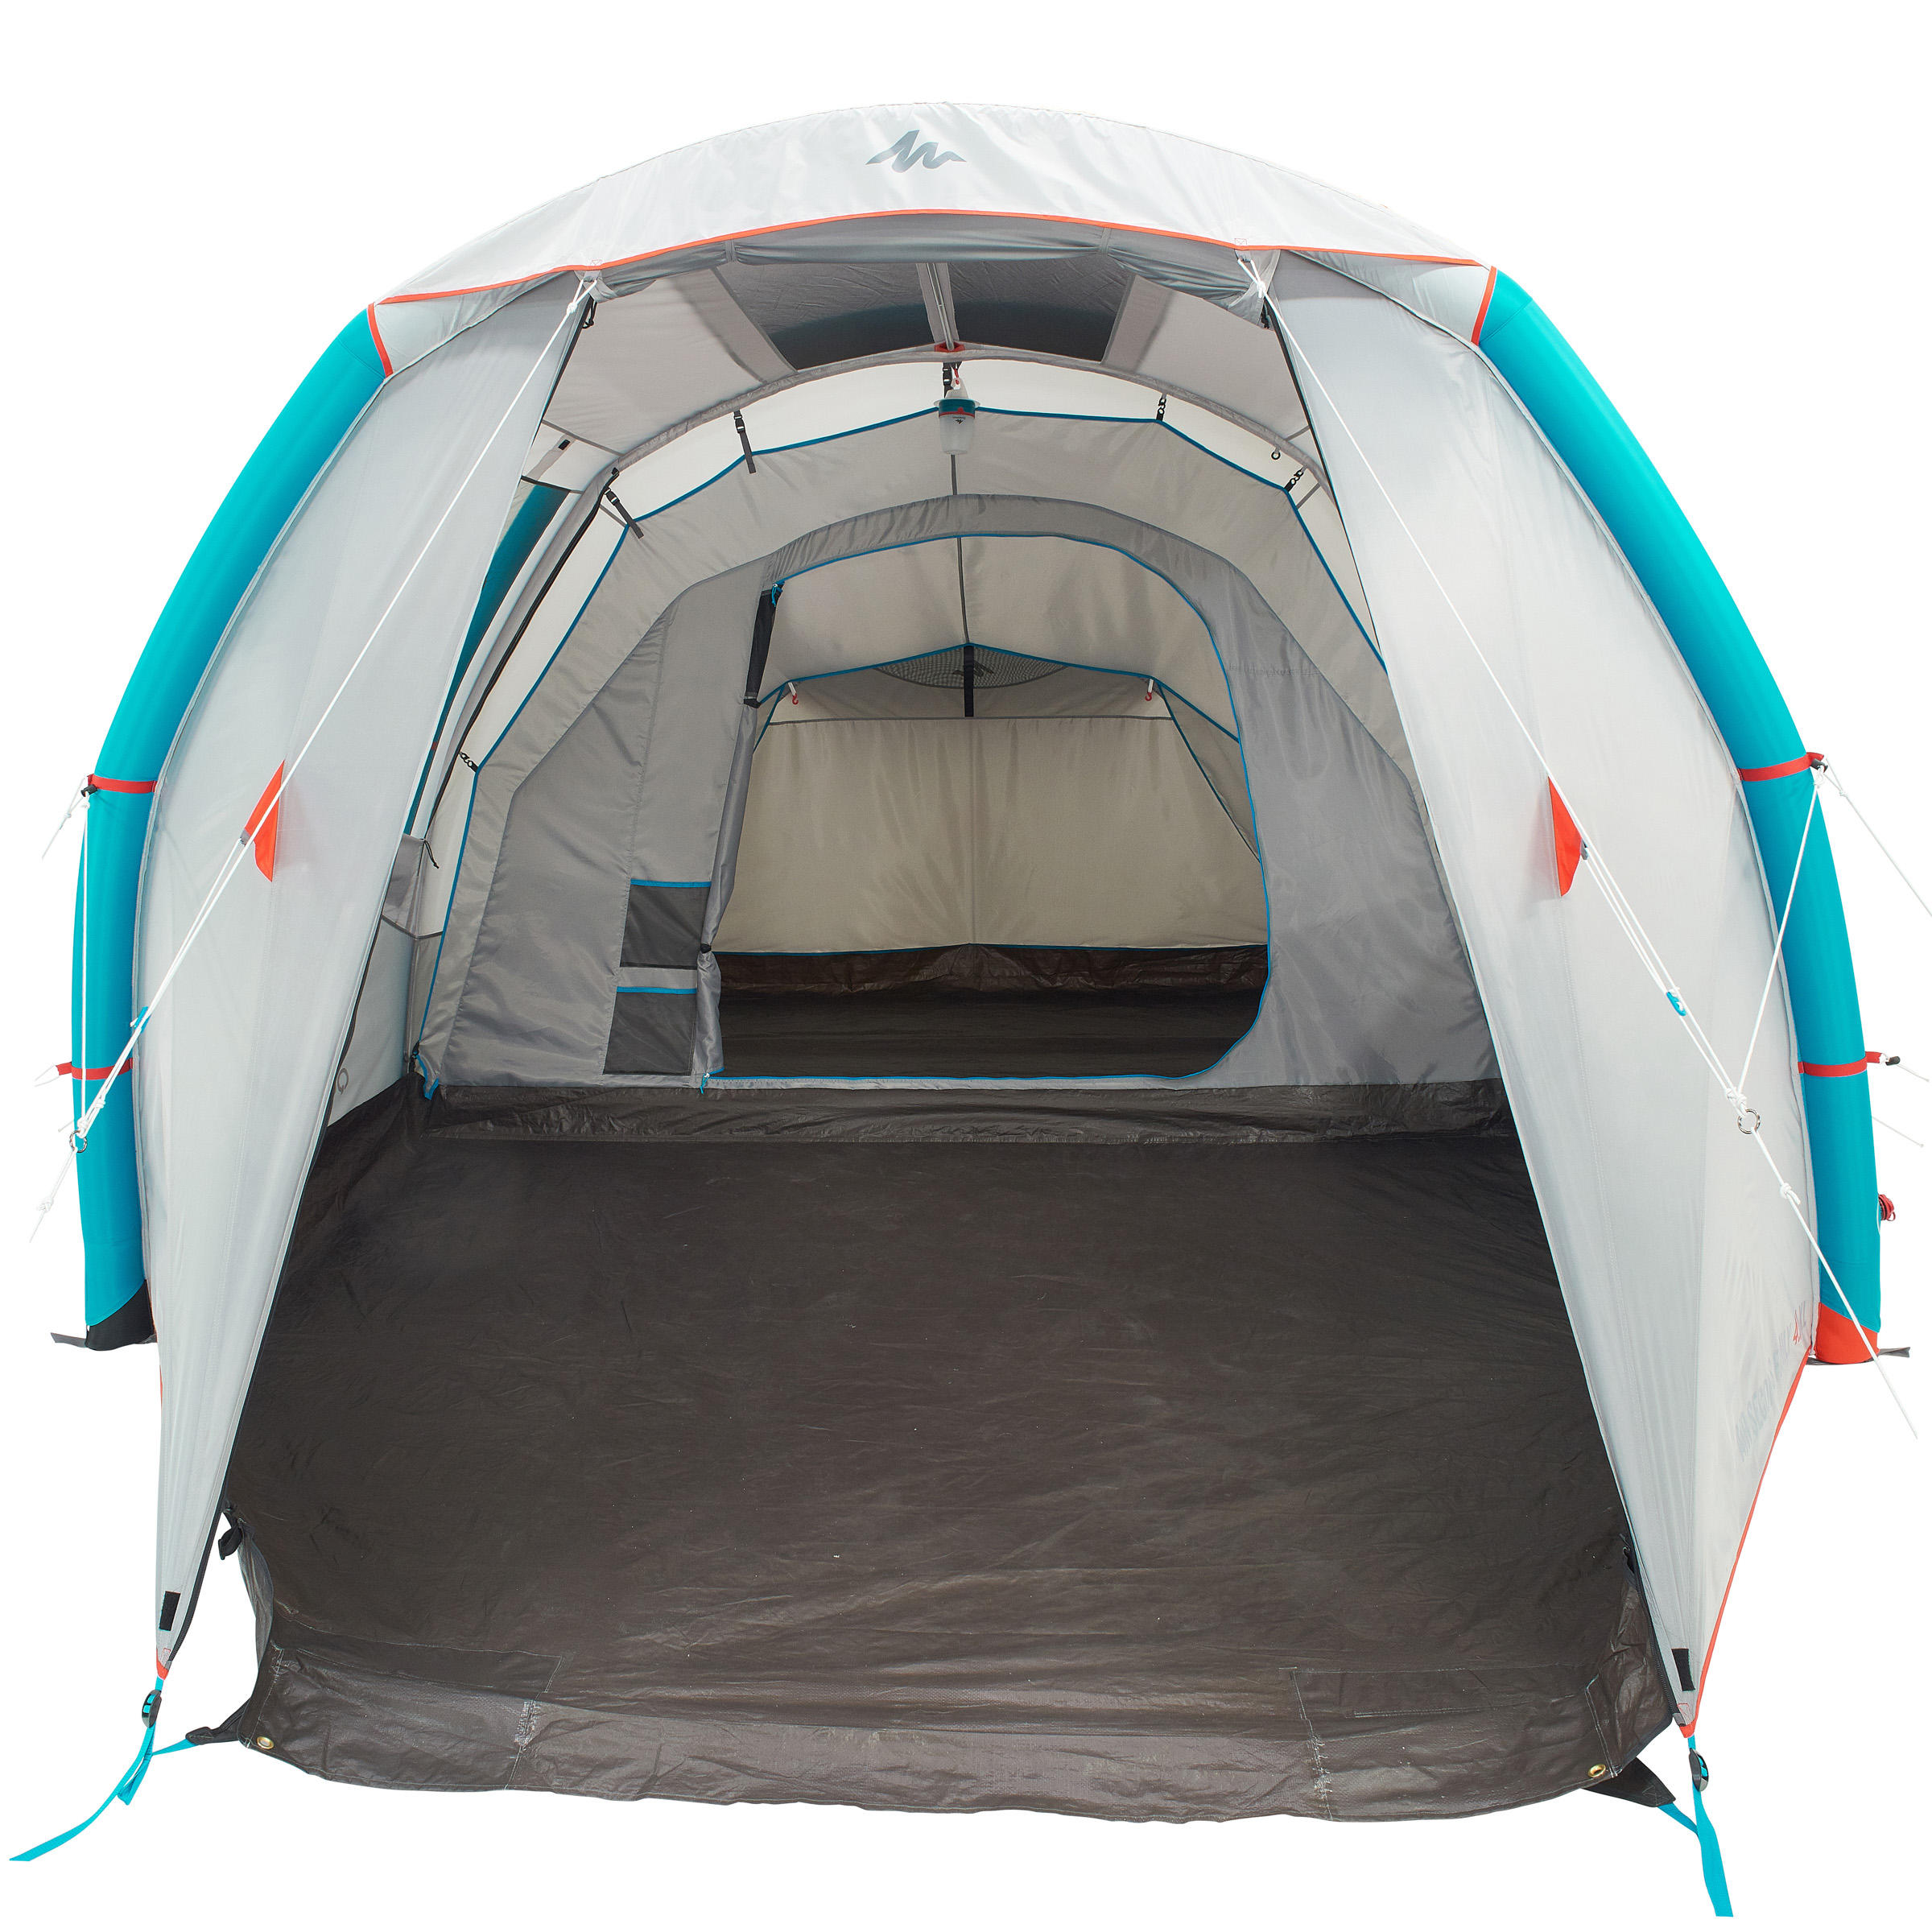 Запасная спальная кабина и тентовый пол для модели палатки Quechua Air Seconds 4.1, серый